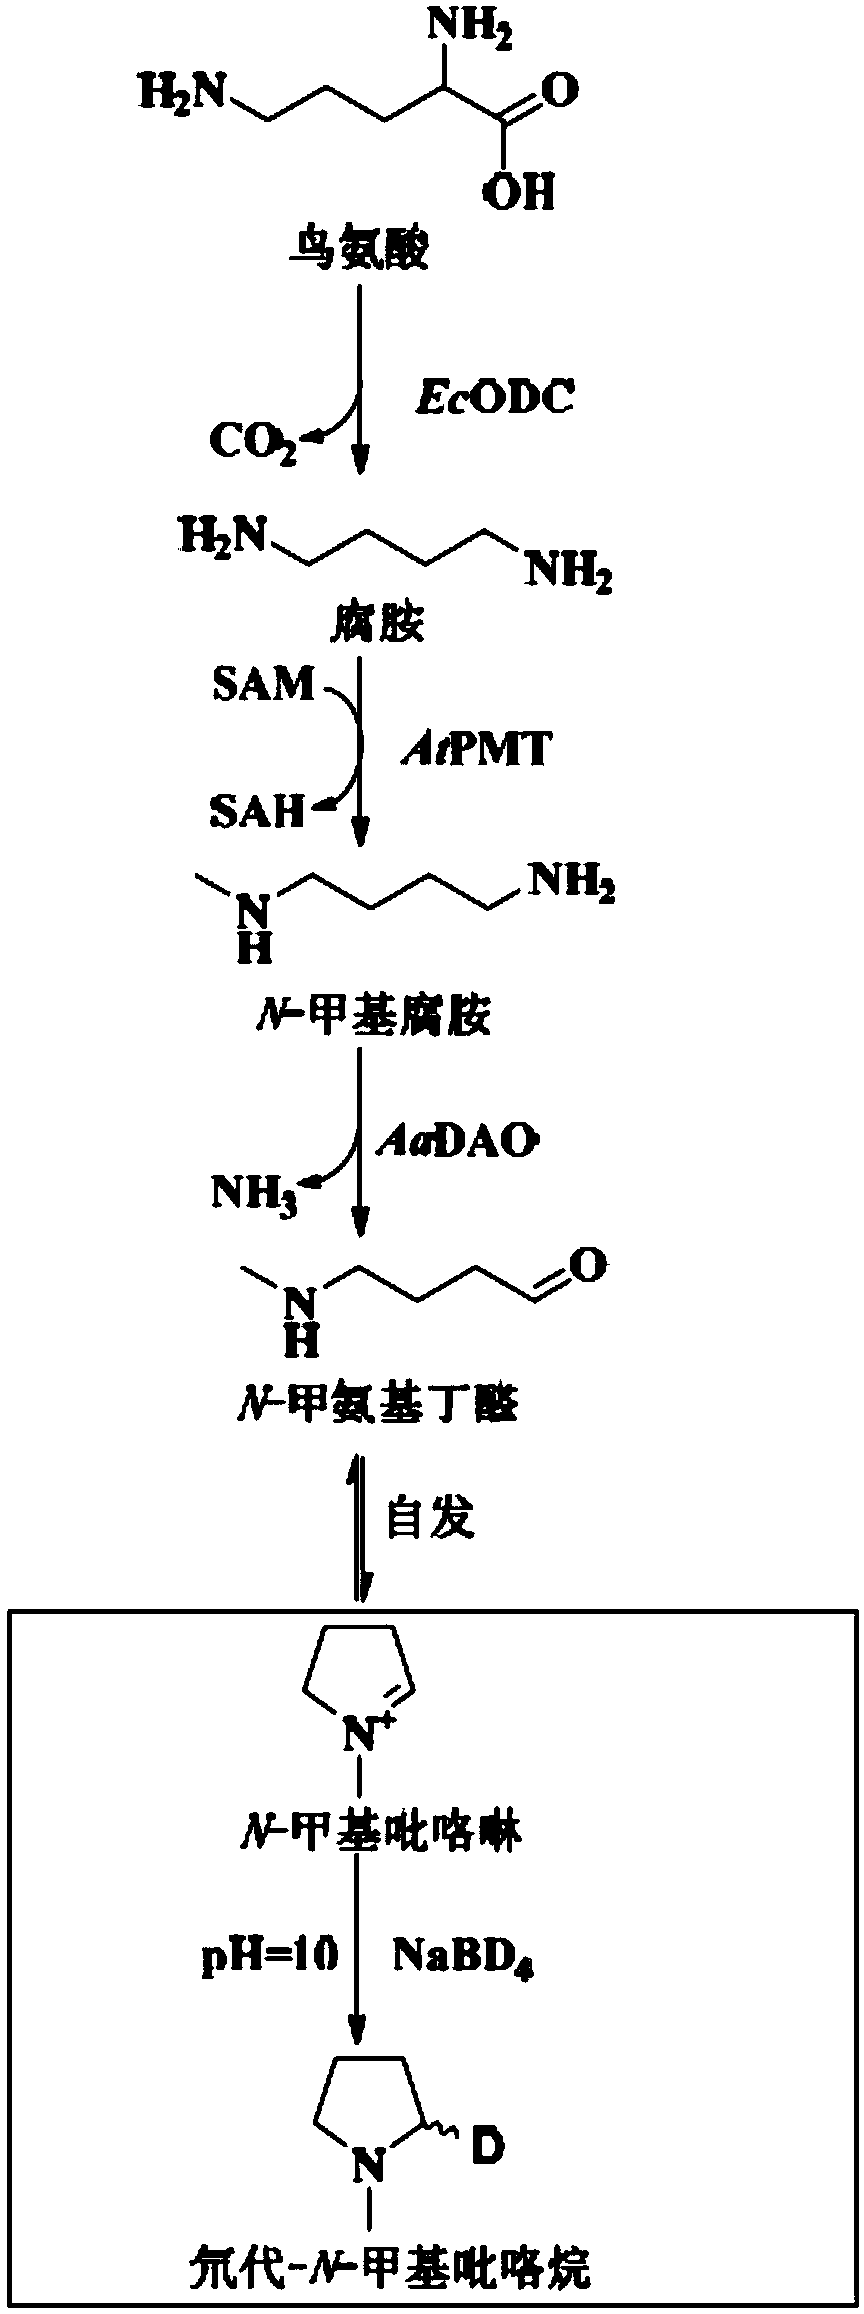 Method for preparing N-methyl pyrroline